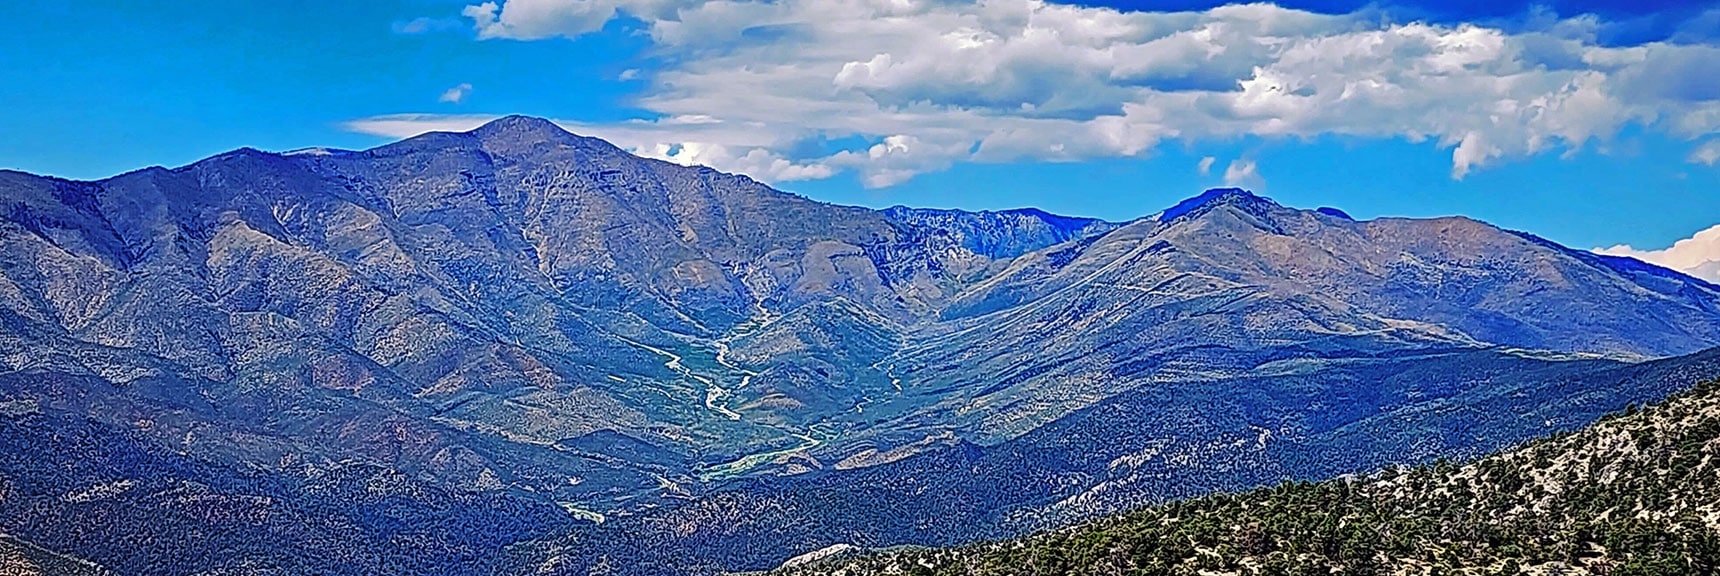 Upper Lovell Canyon. Griffith Peak & Sexton Ridge (left), Harris Mt. & Wilson Ridge (right). | Red Rock Summit | Lovell Canyon & Rainbow Mountain Wilderness, Nevada